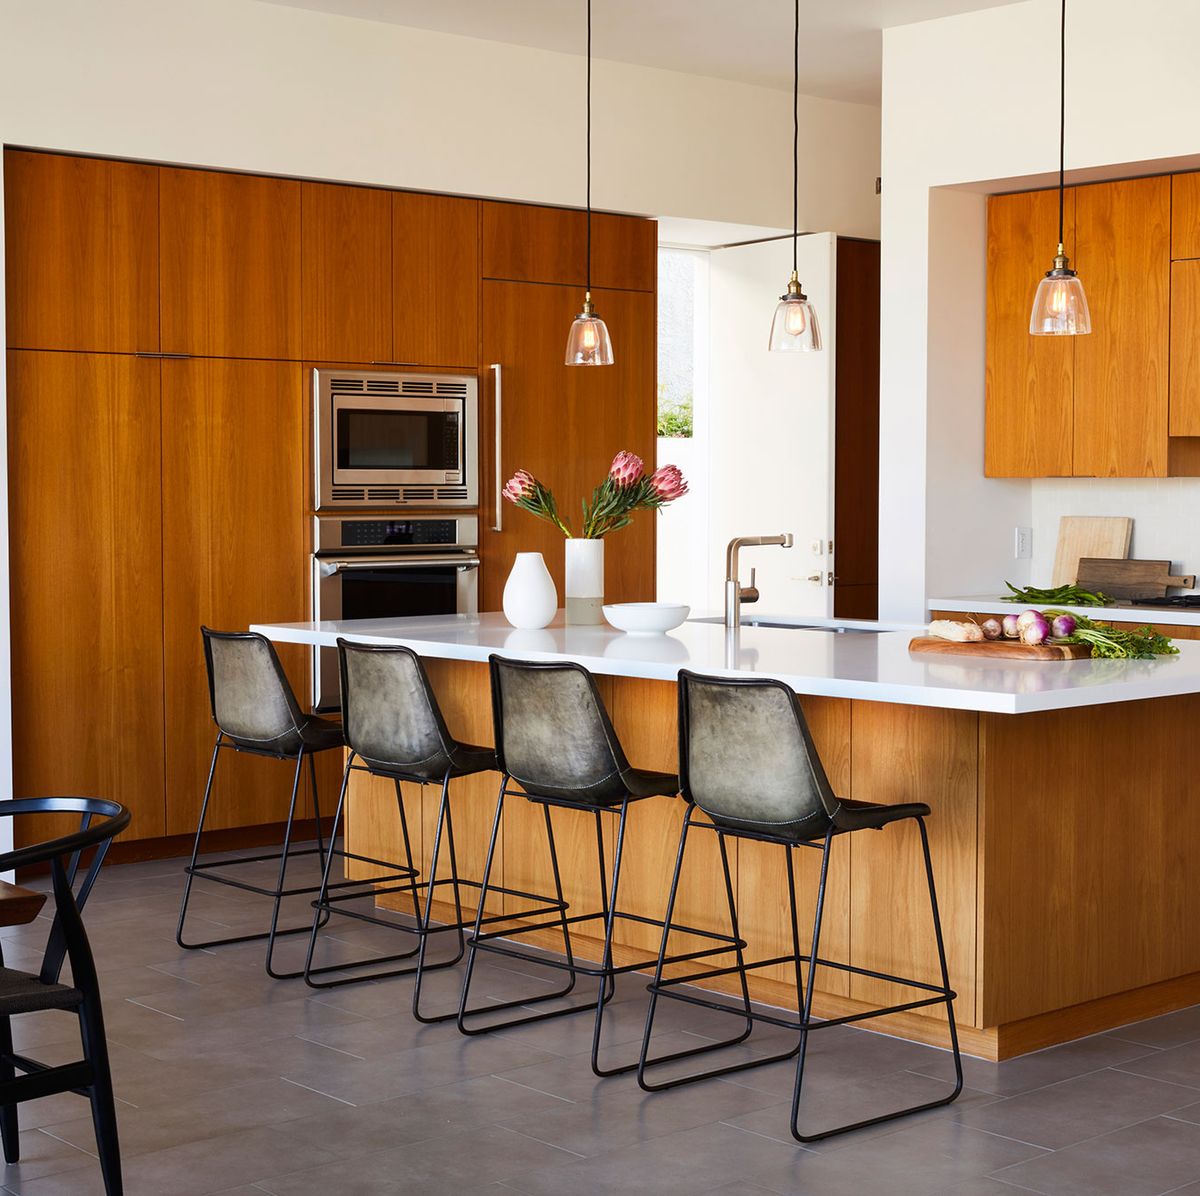 10 Best Modern Kitchen Cabinet Ideas - Chic Modern Cabinet Design